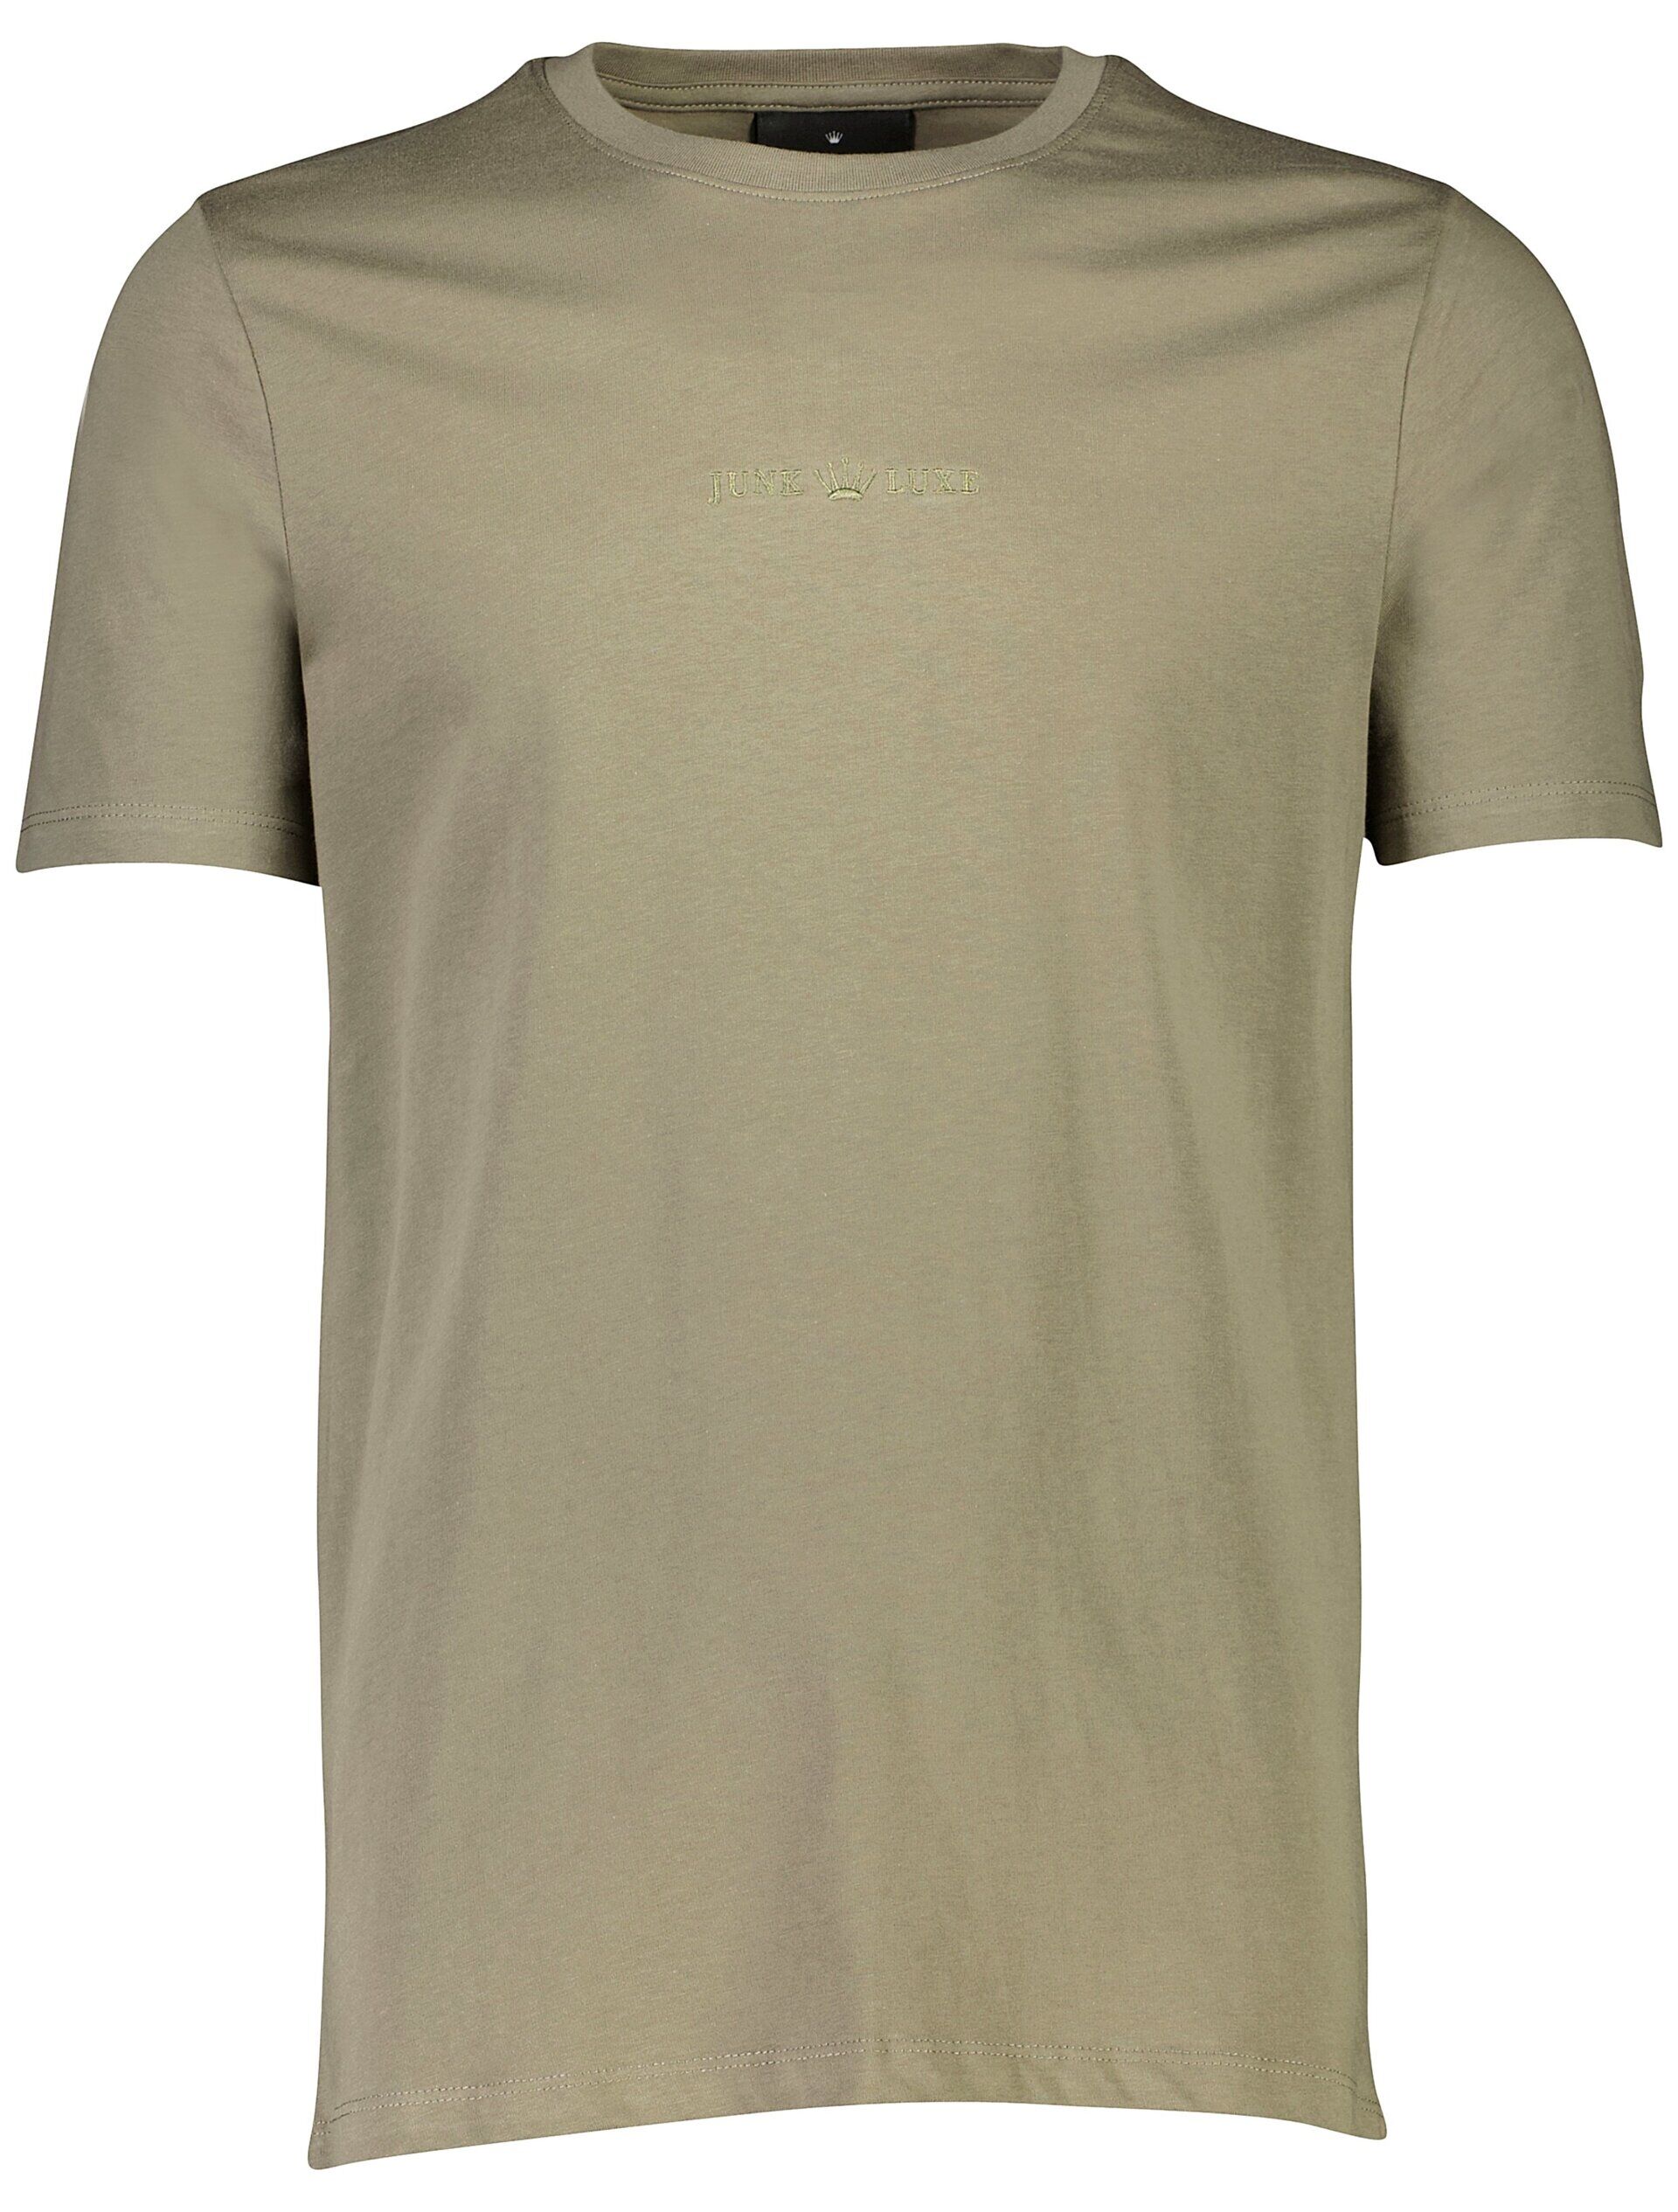 Junk de Luxe  T-shirt Grøn 60-452043